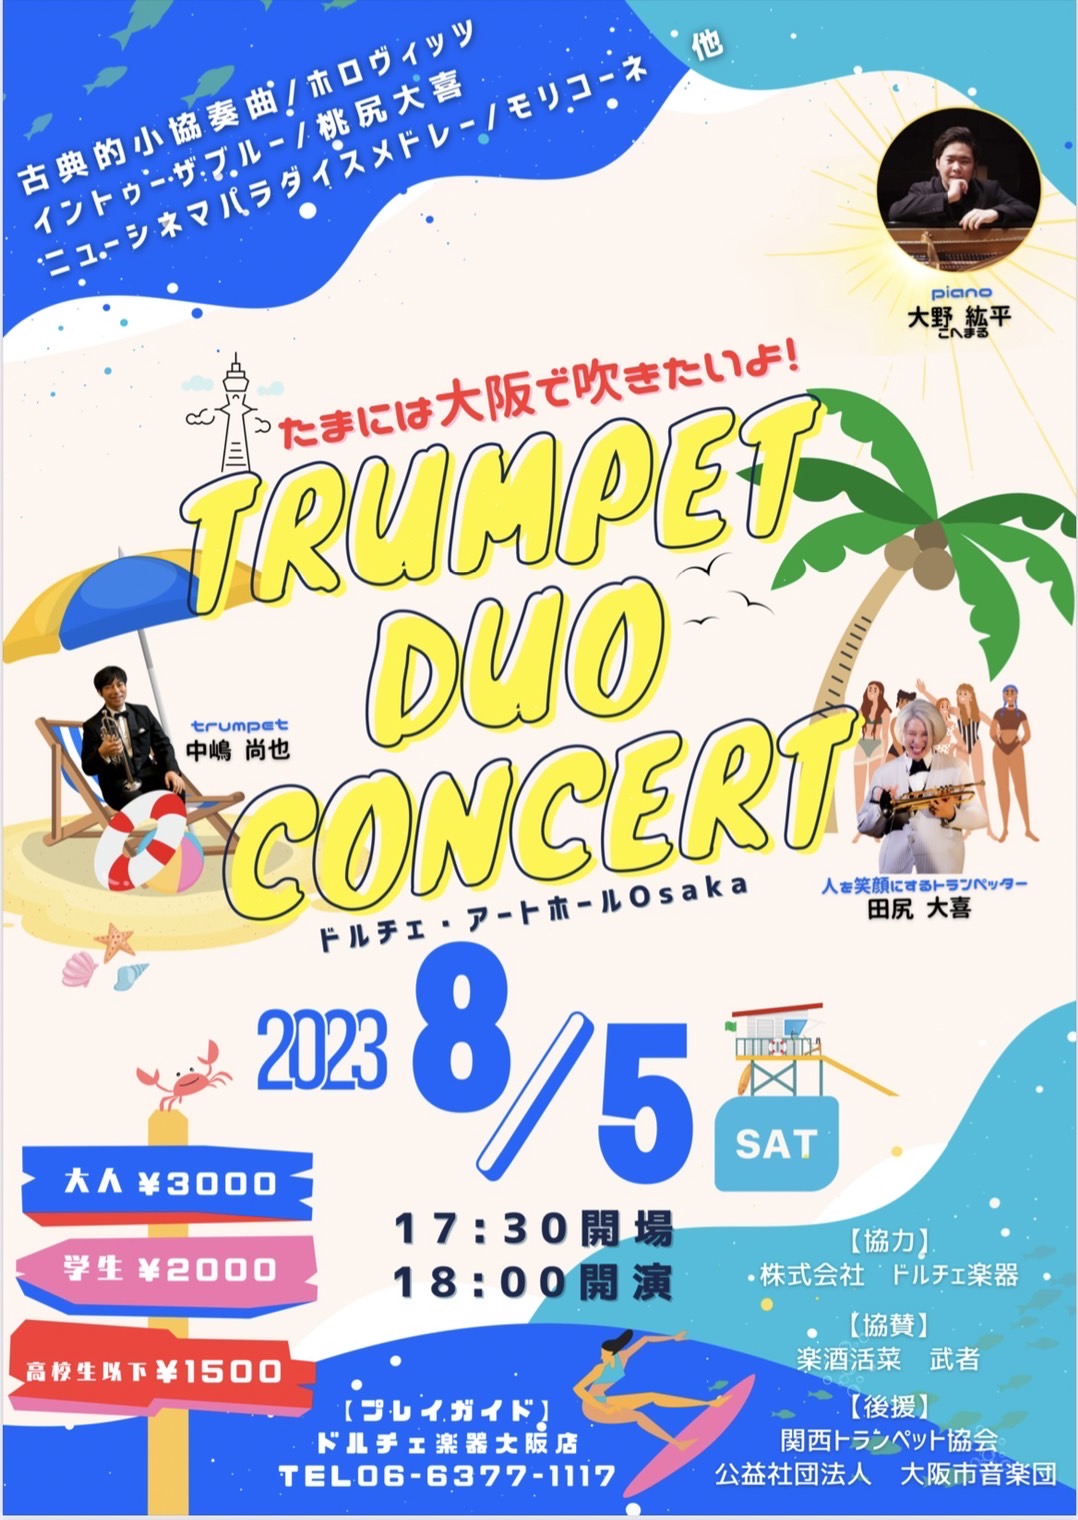 trumpet duo concert